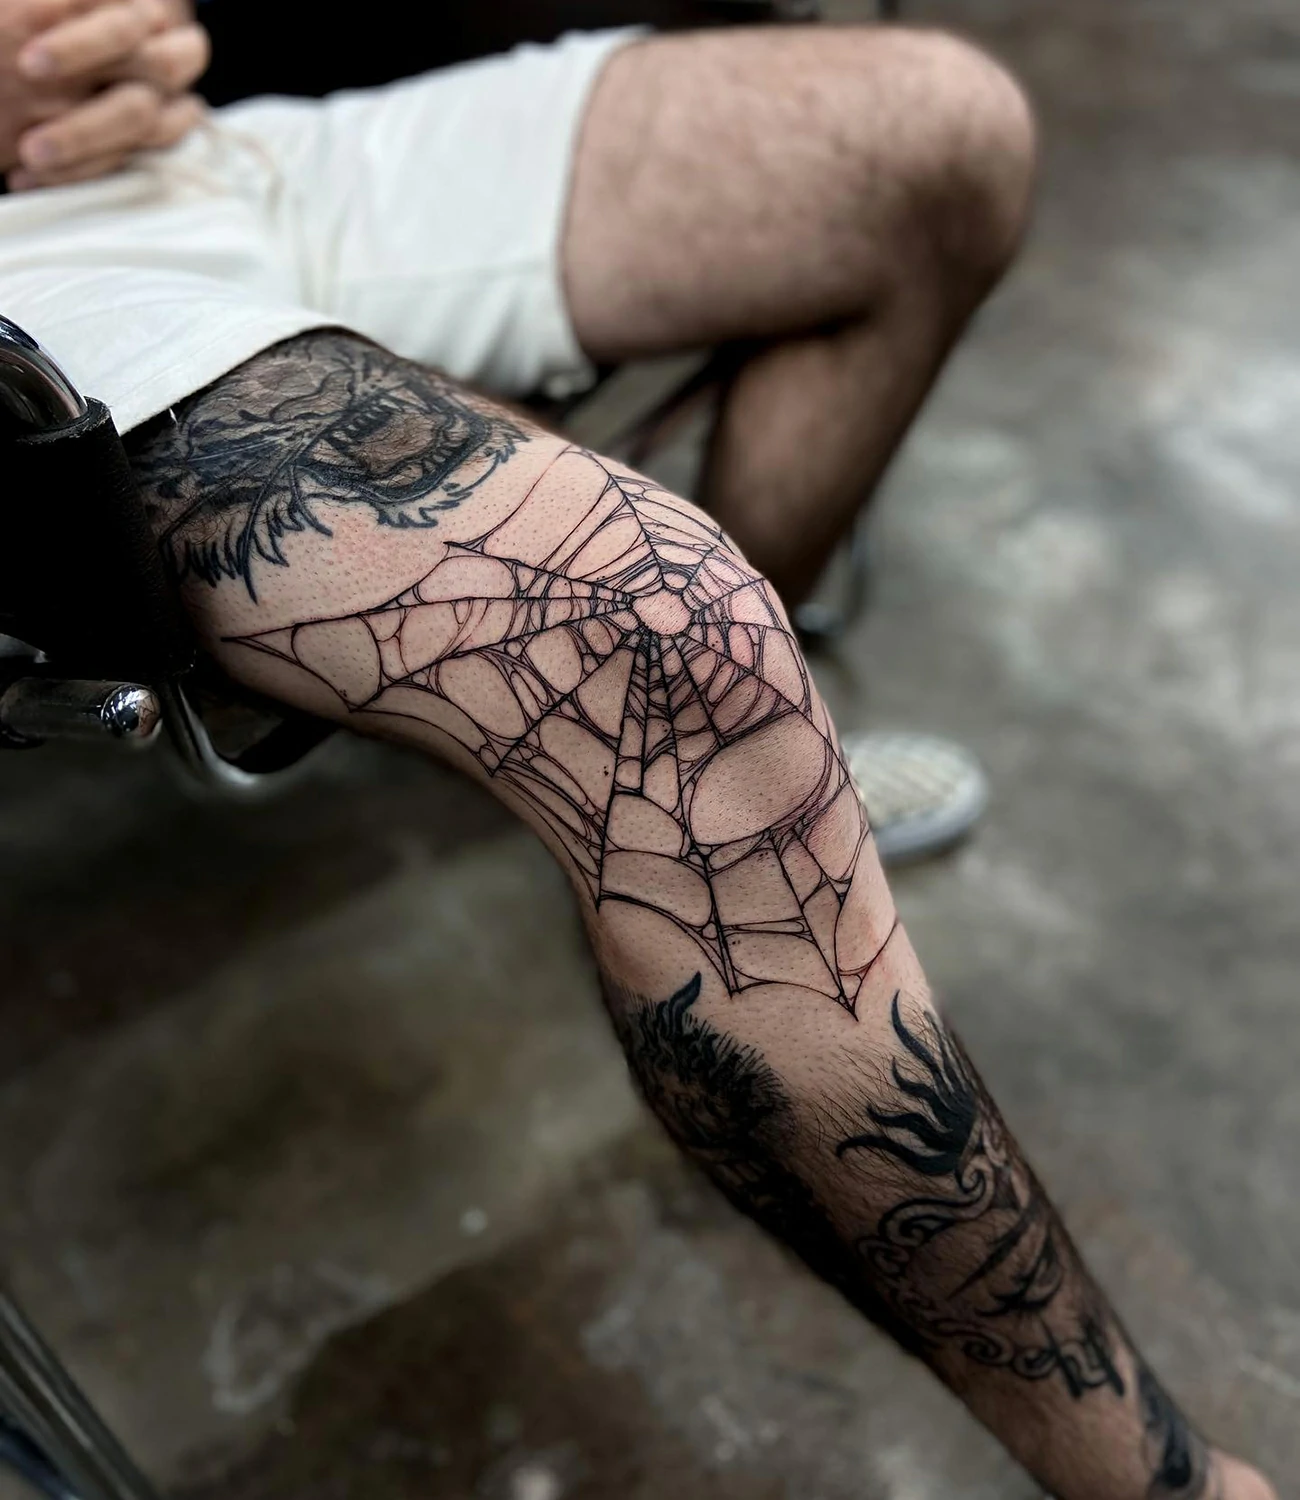 Spider web tattoo